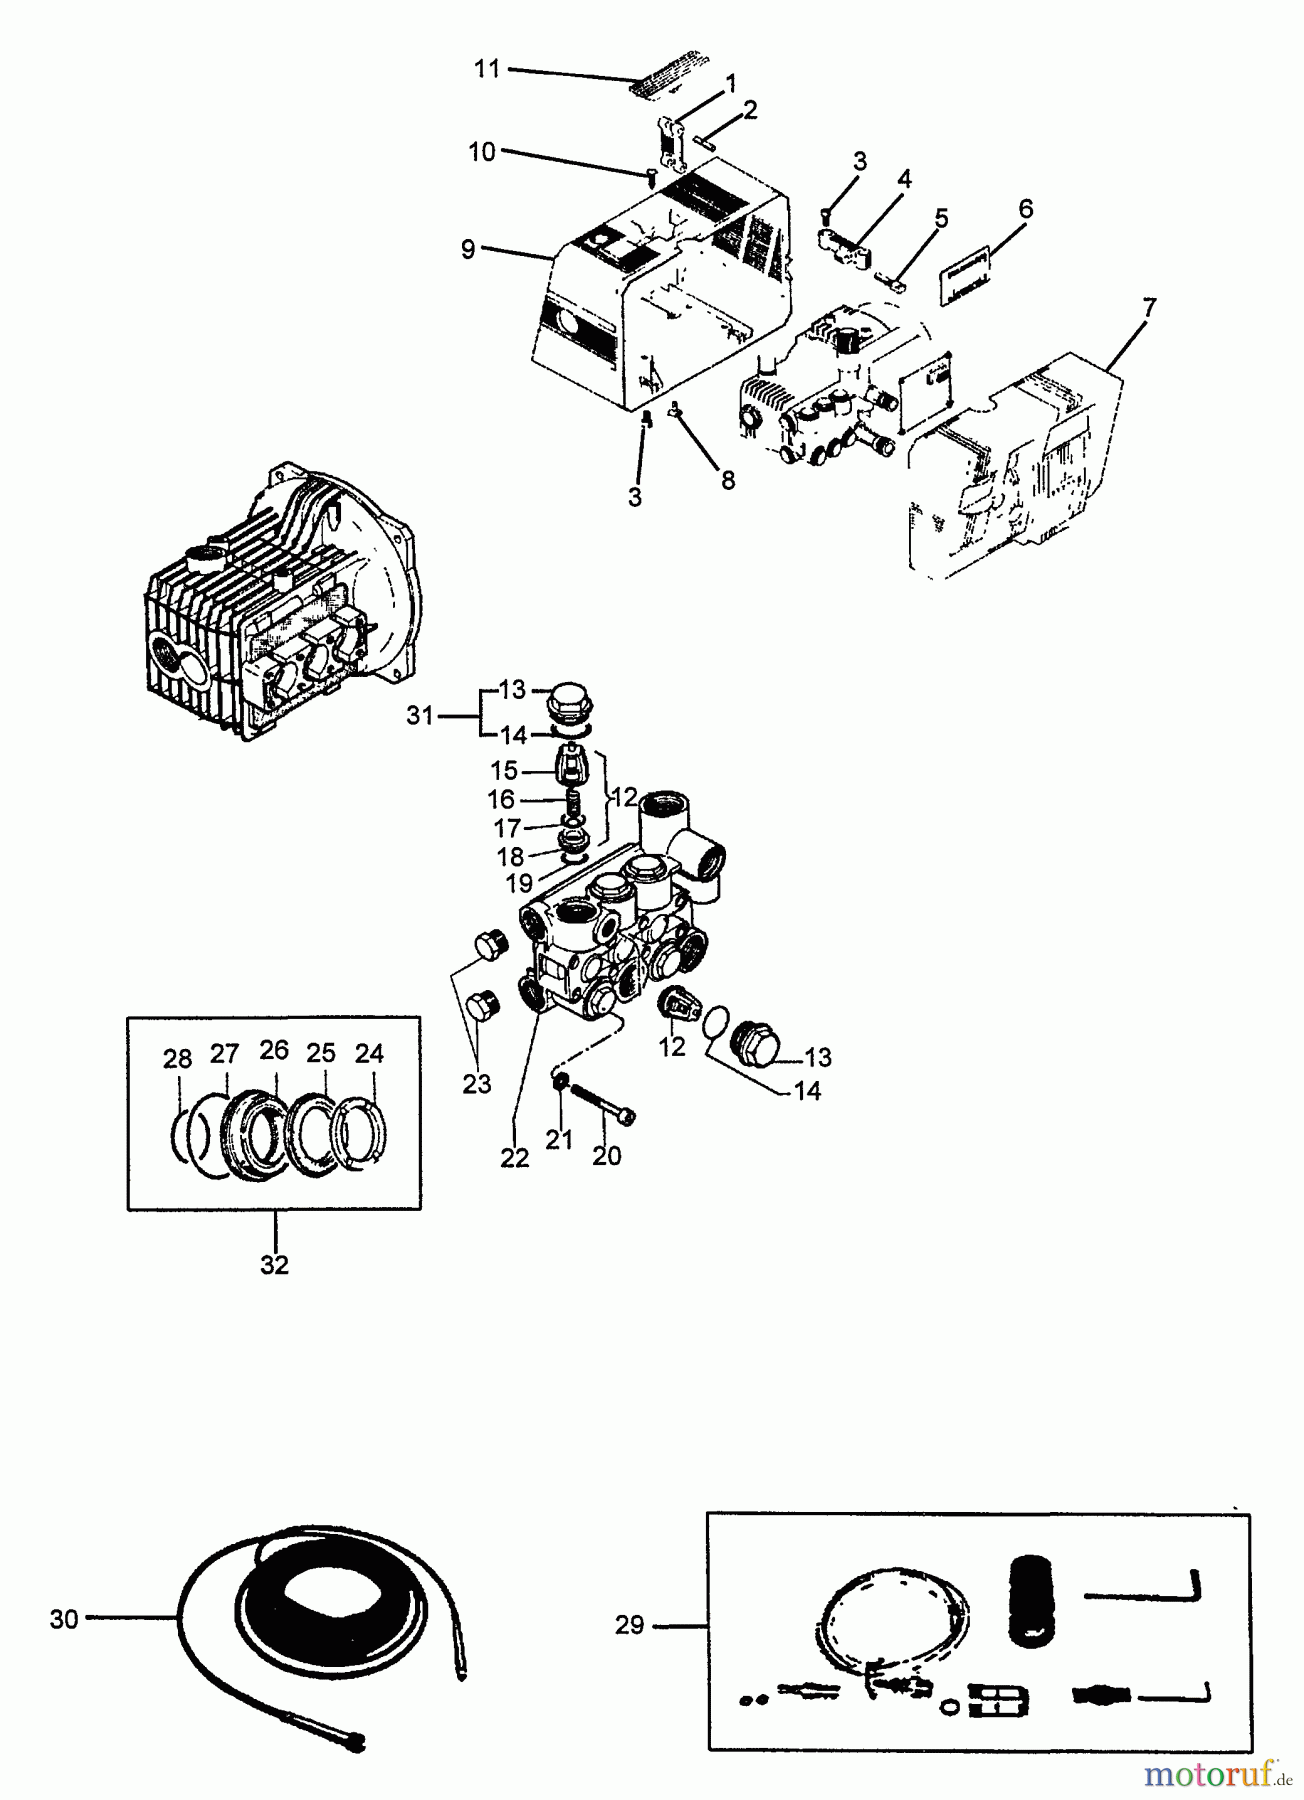  Echo Hochdruckreiniger HPP-1890 - Echo Pressure Washer (1991 Models) SEAL KITS, MOTOR HOUSING, HOSE, ACCESSORIES